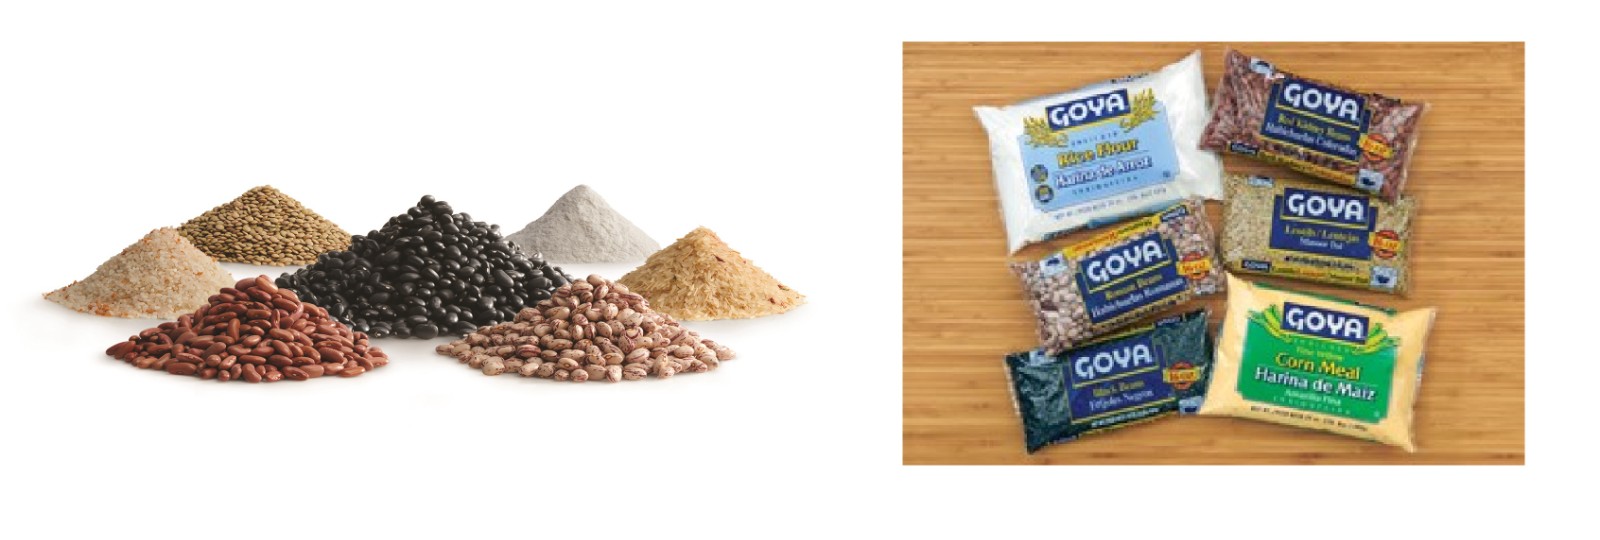 Goya foods1.jpg